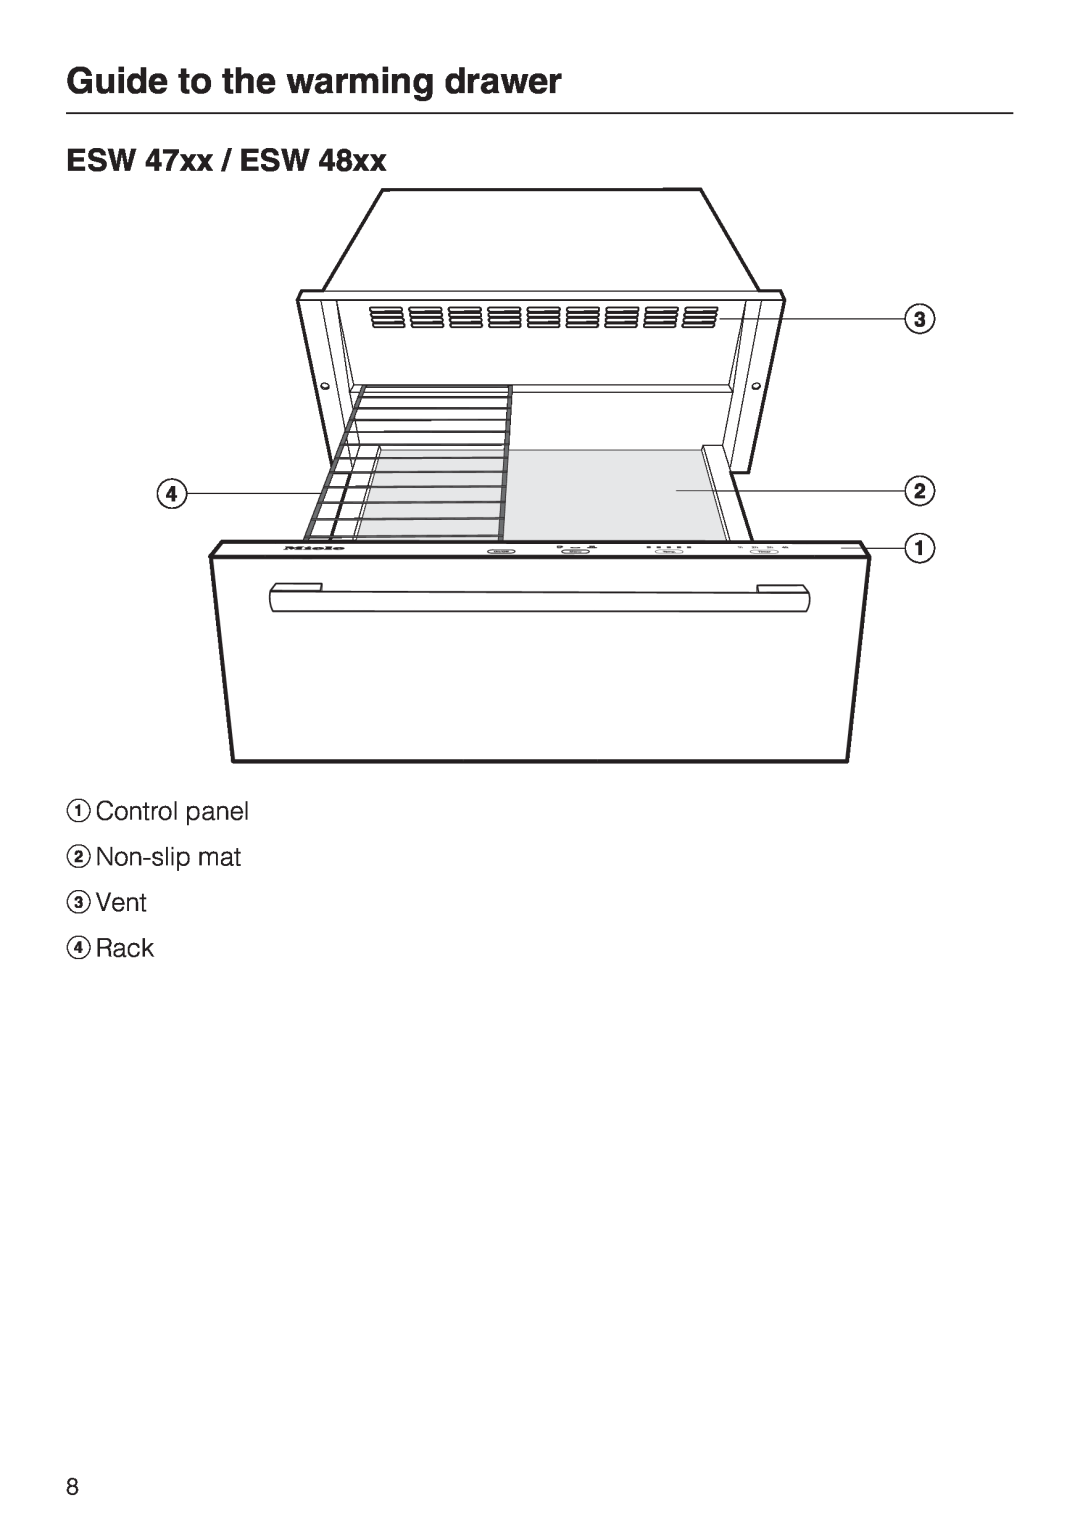 Miele ESW48XX, ESW 408X-14 ESW 47xx / ESW, Guide to the warming drawer, aControl panel bNon-slip mat c Vent d Rack 